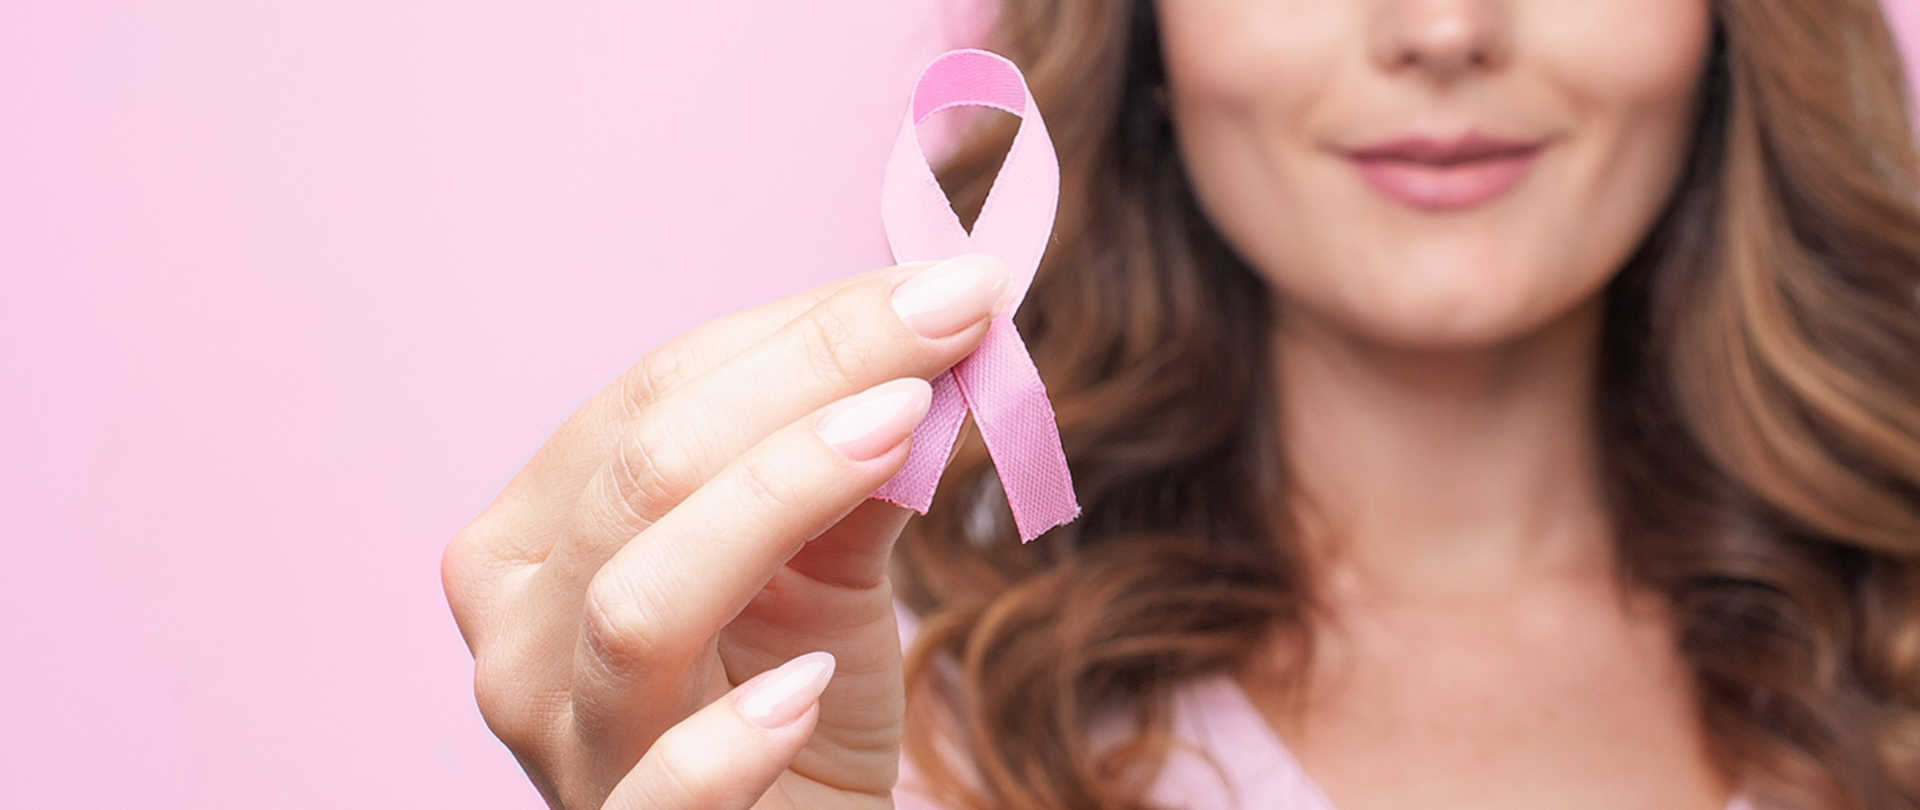 rak_piersi wstążeczka różowa